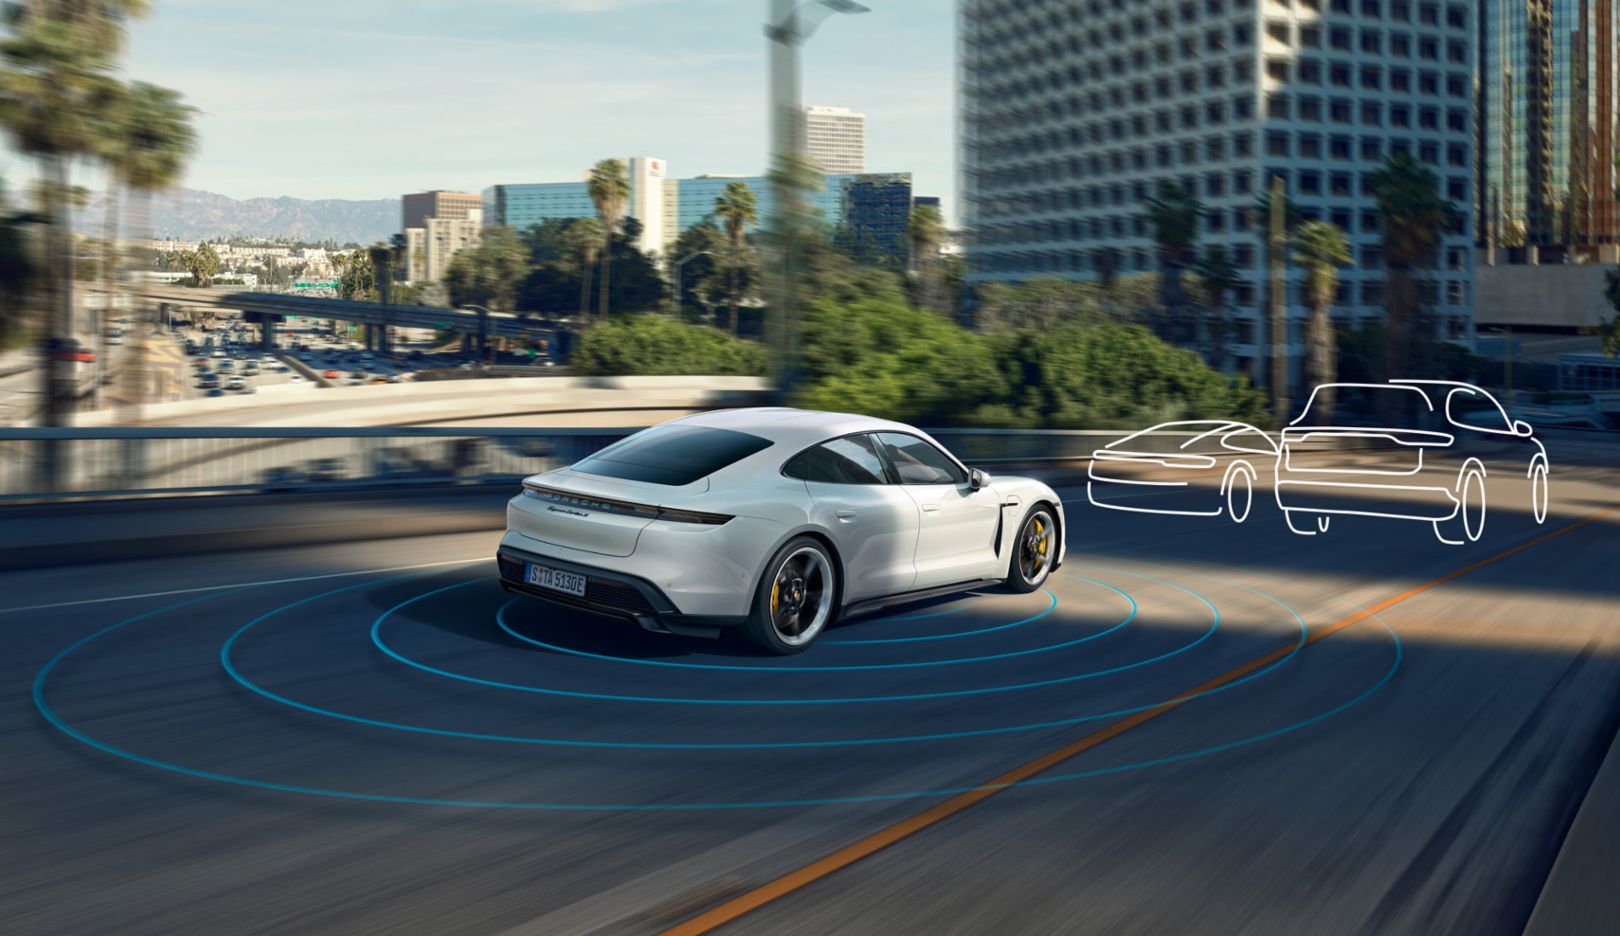 Das vernetzte und intelligente Fahrzeug der Zukunft: Im internationalen Standortverbund führt Porsche Engineering in der Projektumsetzung fundierte Softwarekompetenz, umfassendes Know-how im Bereich der Fahrerassistenzsysteme und der künstlichen Intelligenz sowie der Cloud-Anbindung zusammen.